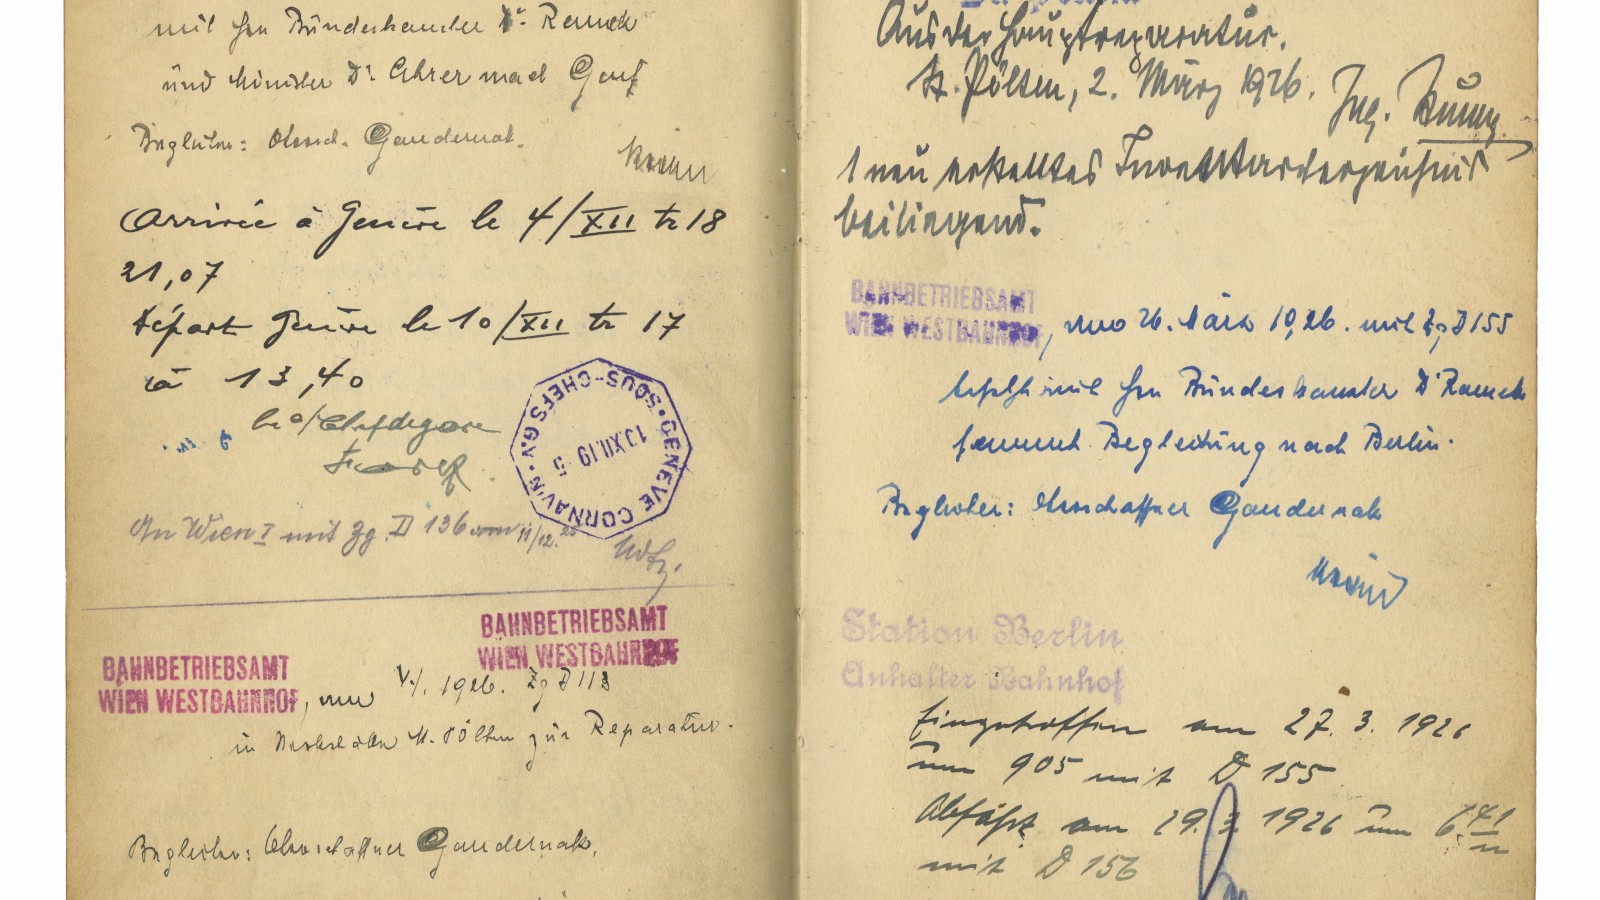 Doppelseite mit Eintragungen aus dem Kondukteurbuch, z. B. Fahrt von Bundeskanzler Rudolf Ramek und Finanzminister Jakob Ahrer am 3. Dezember 1925